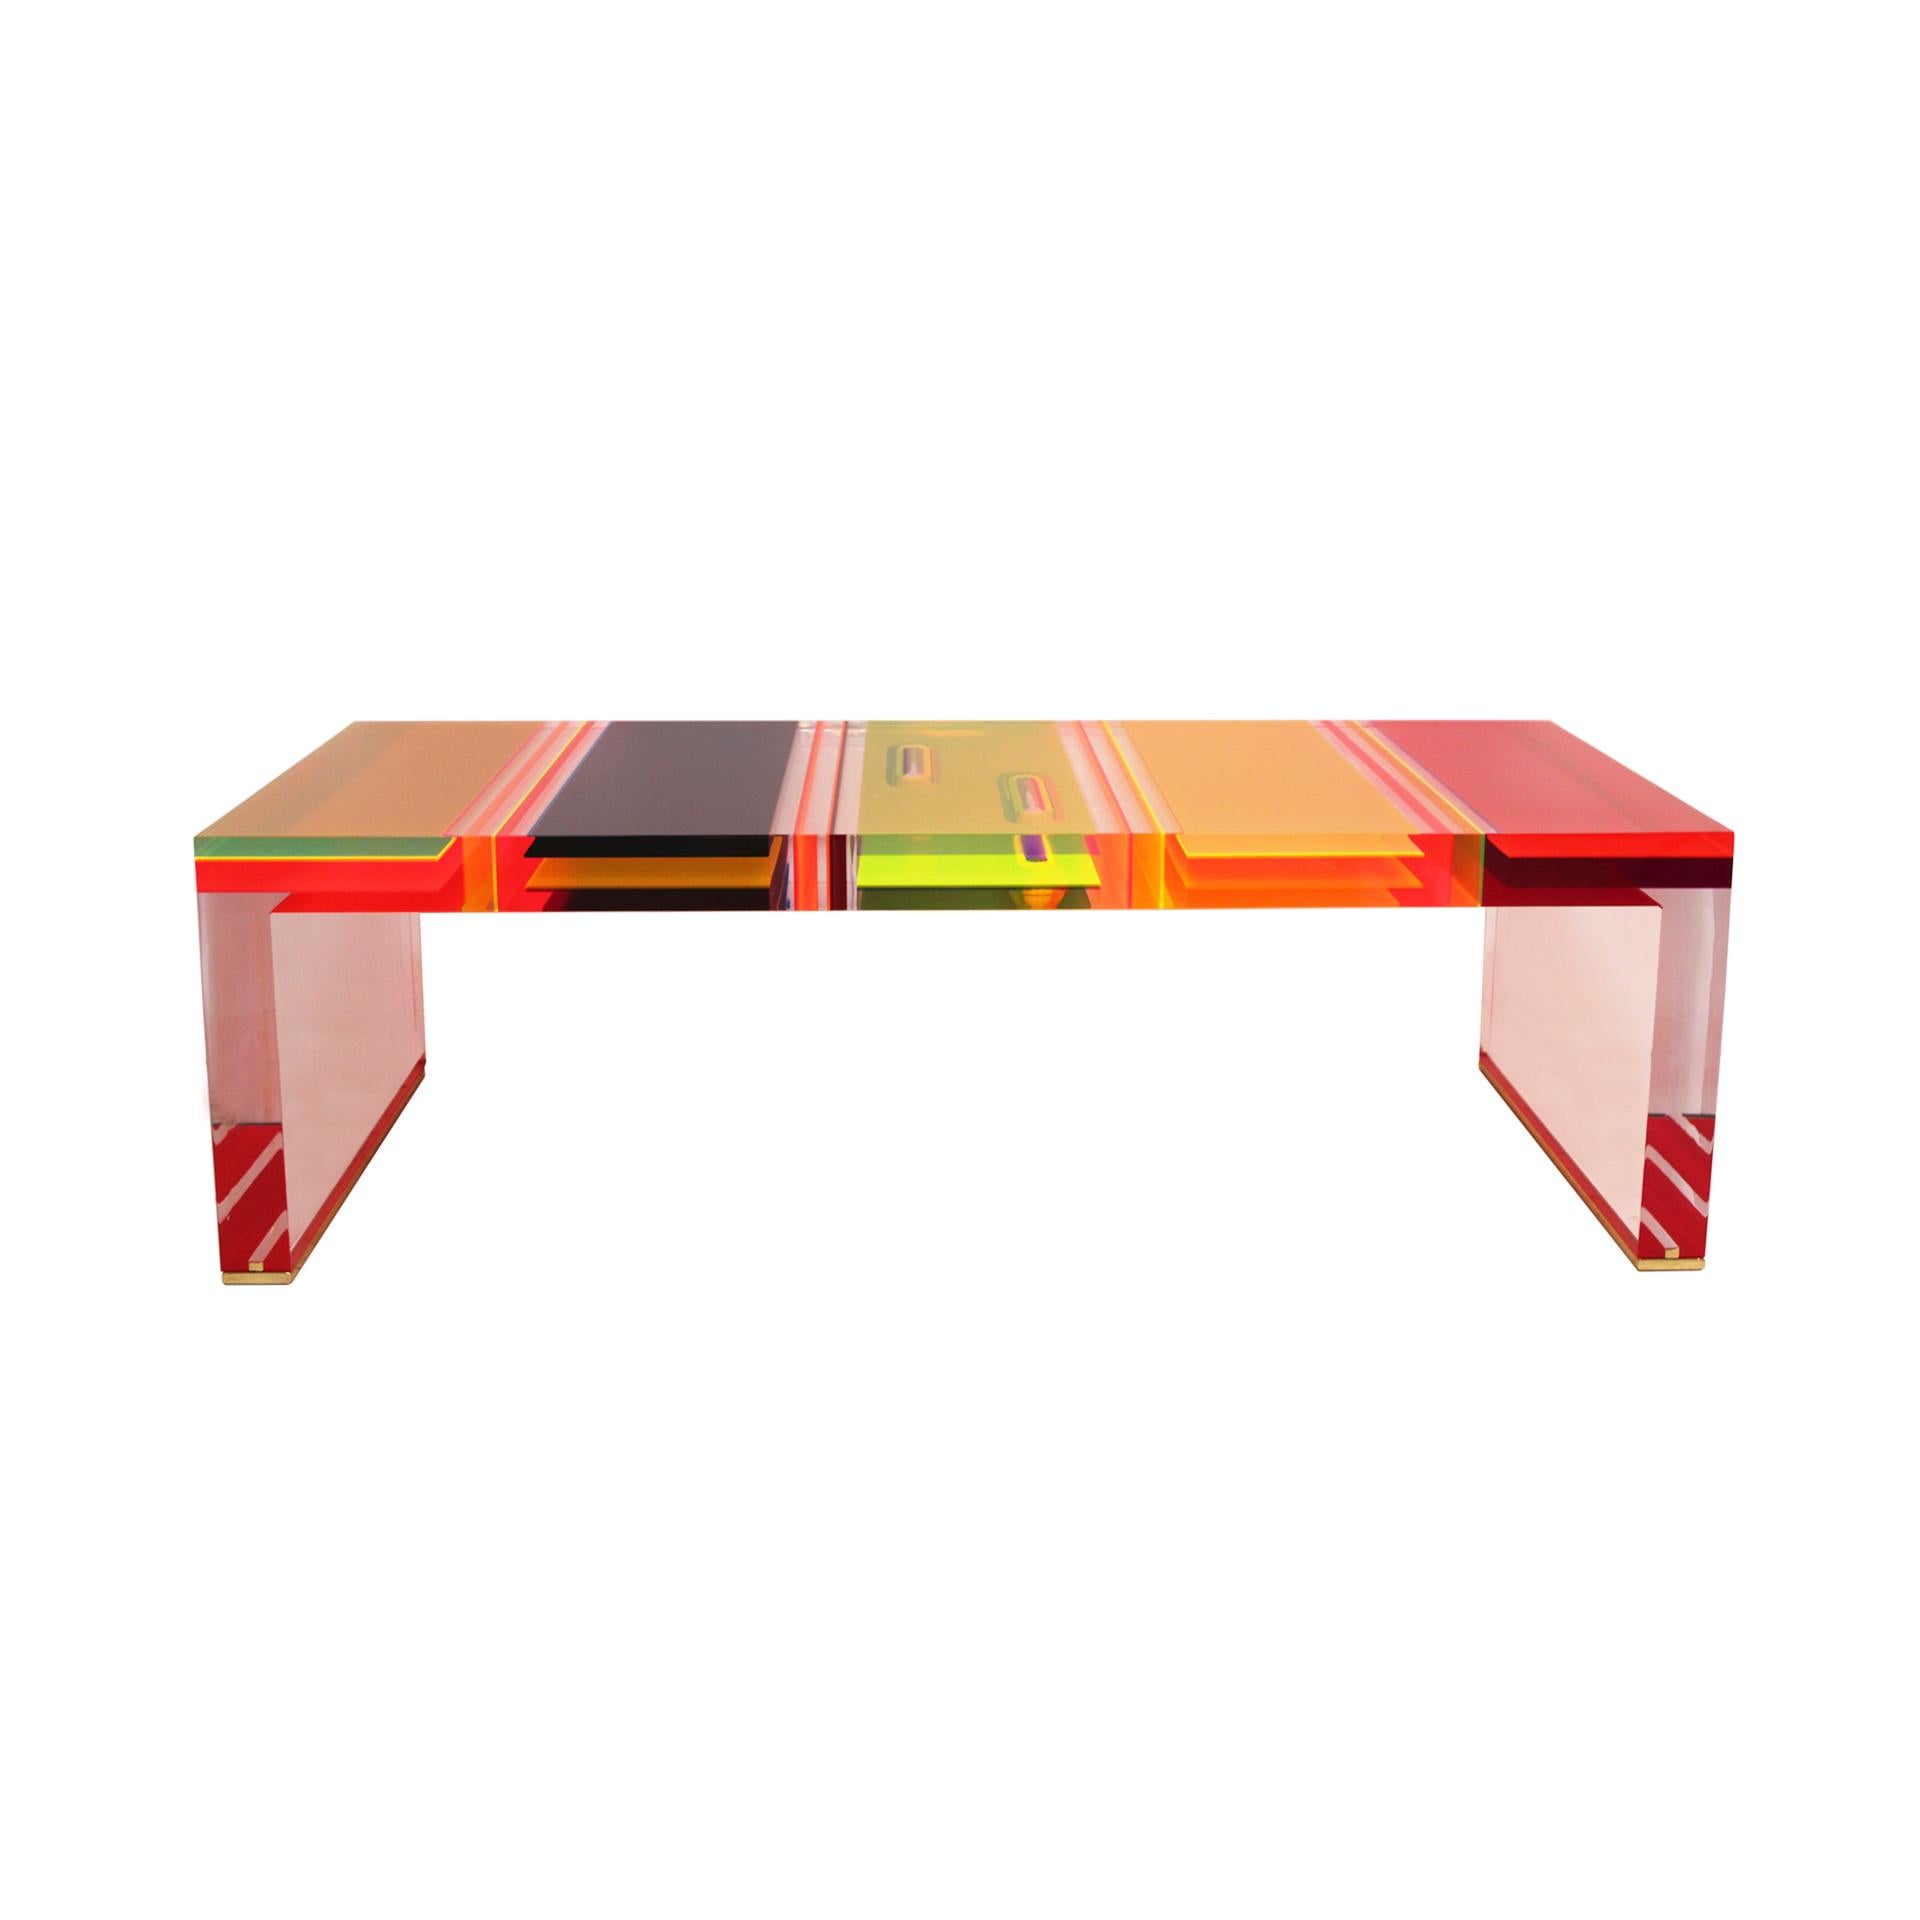 Table basse rectangulaire conçue par le Studio Superego de Milan, réalisée en plexiglas multicolore et transparent de sept centimètres d'épaisseur et dont les pieds sont finis en laiton.

Notre principal objectif est la satisfaction du client, c'est